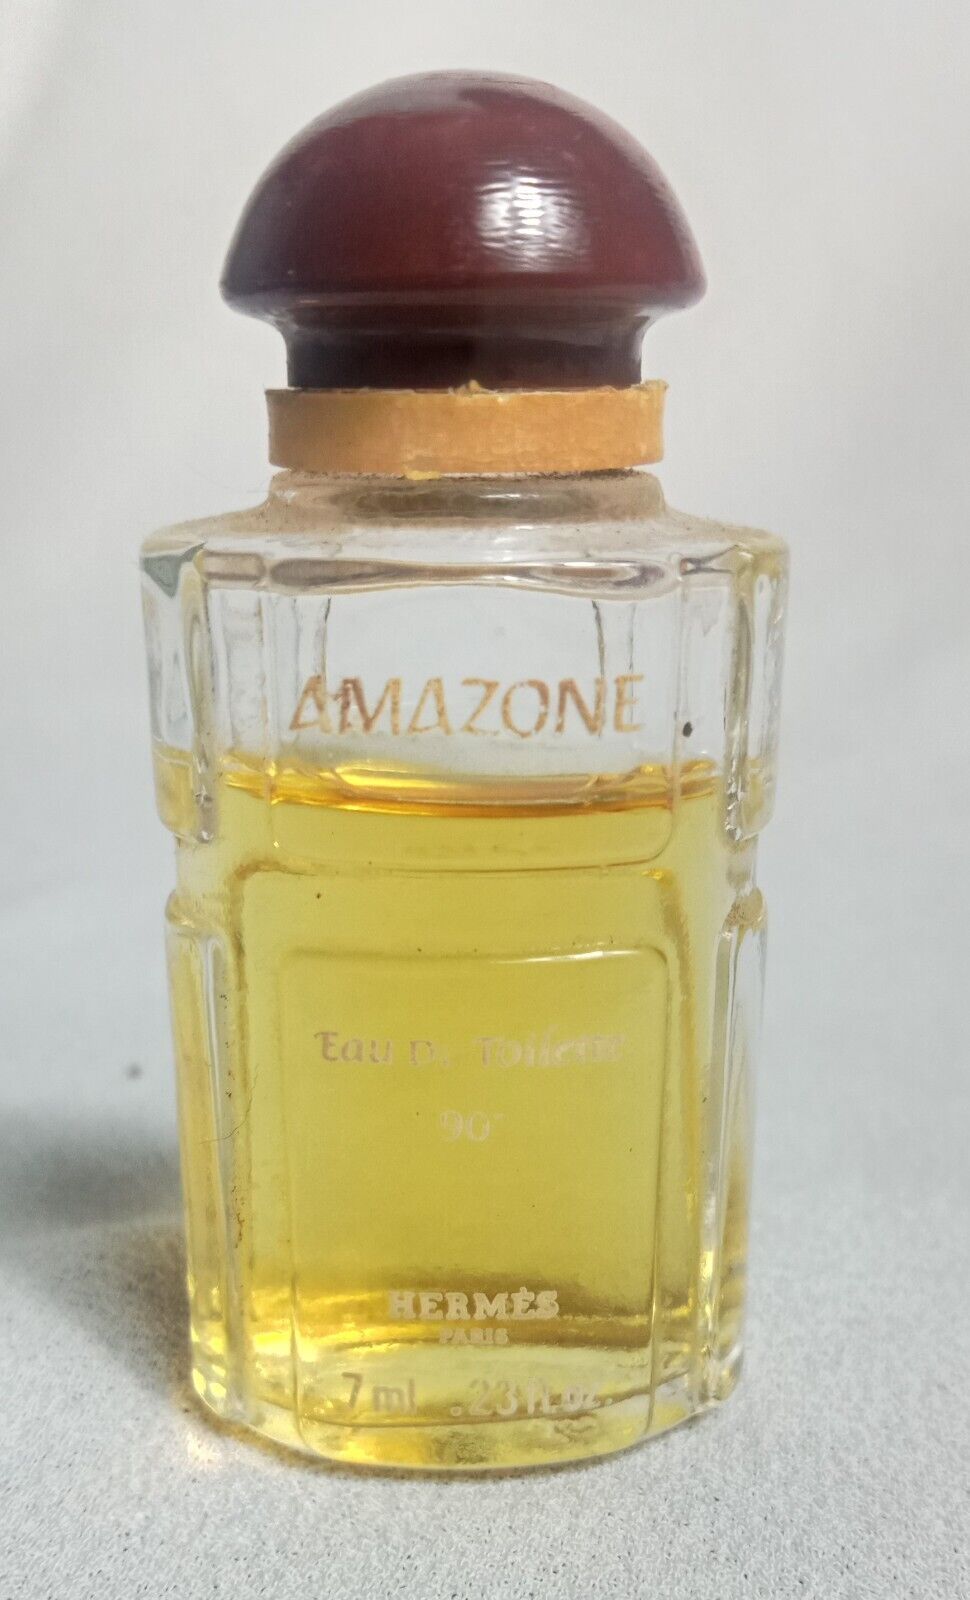 Parfum Legend Vintage Old Stock AMAZONE Eau de Toilette by HERMES 7ml